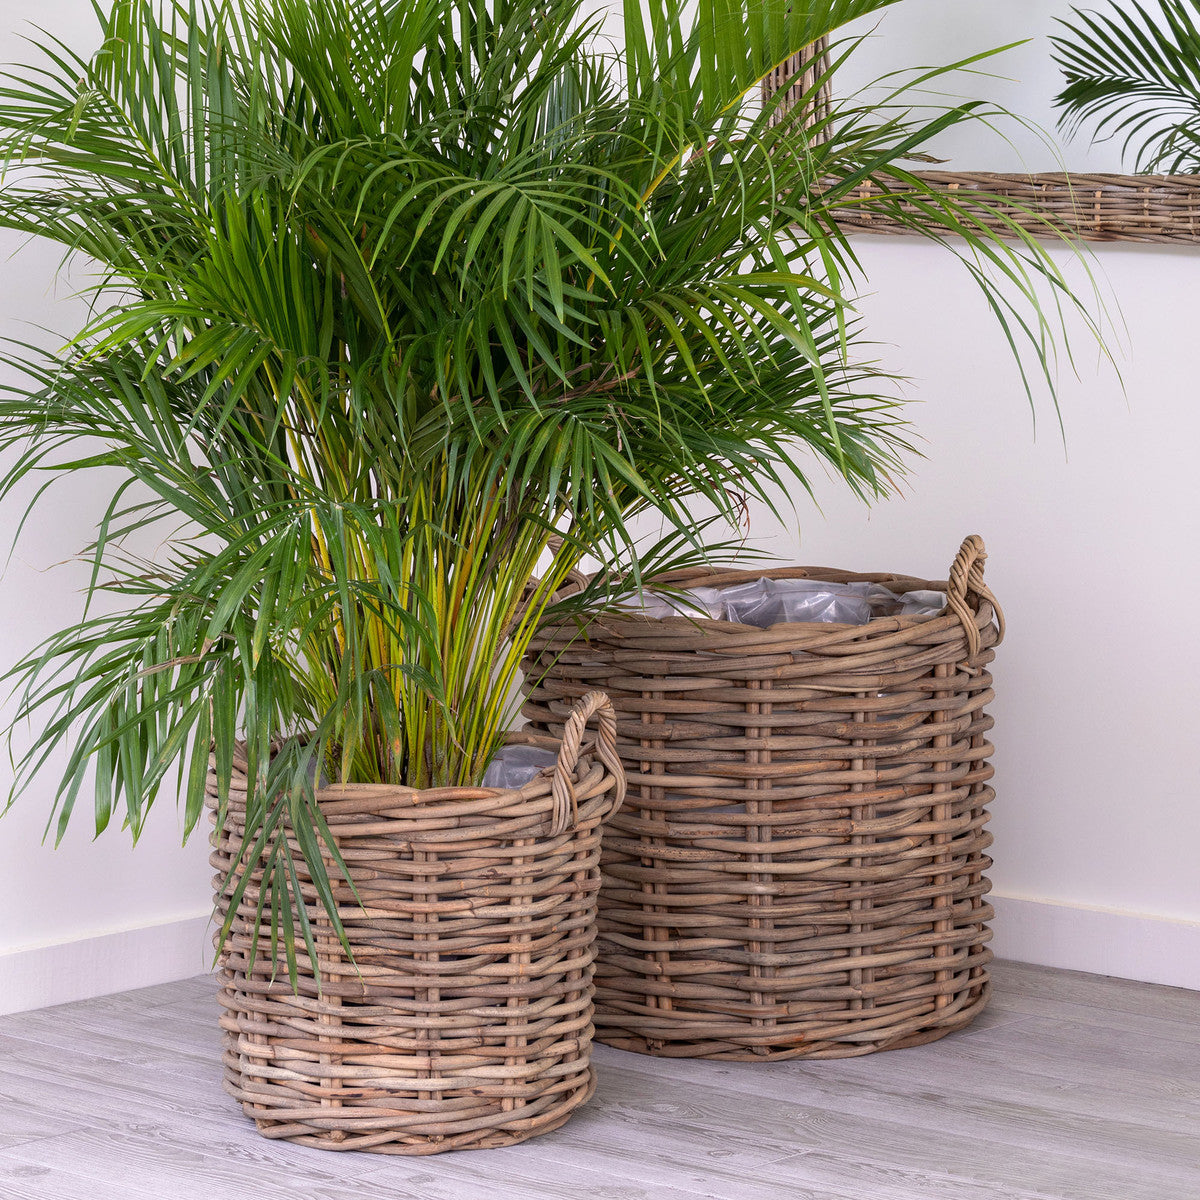 handwoven rattan floor baskets with green indoor plant white walls wood floor